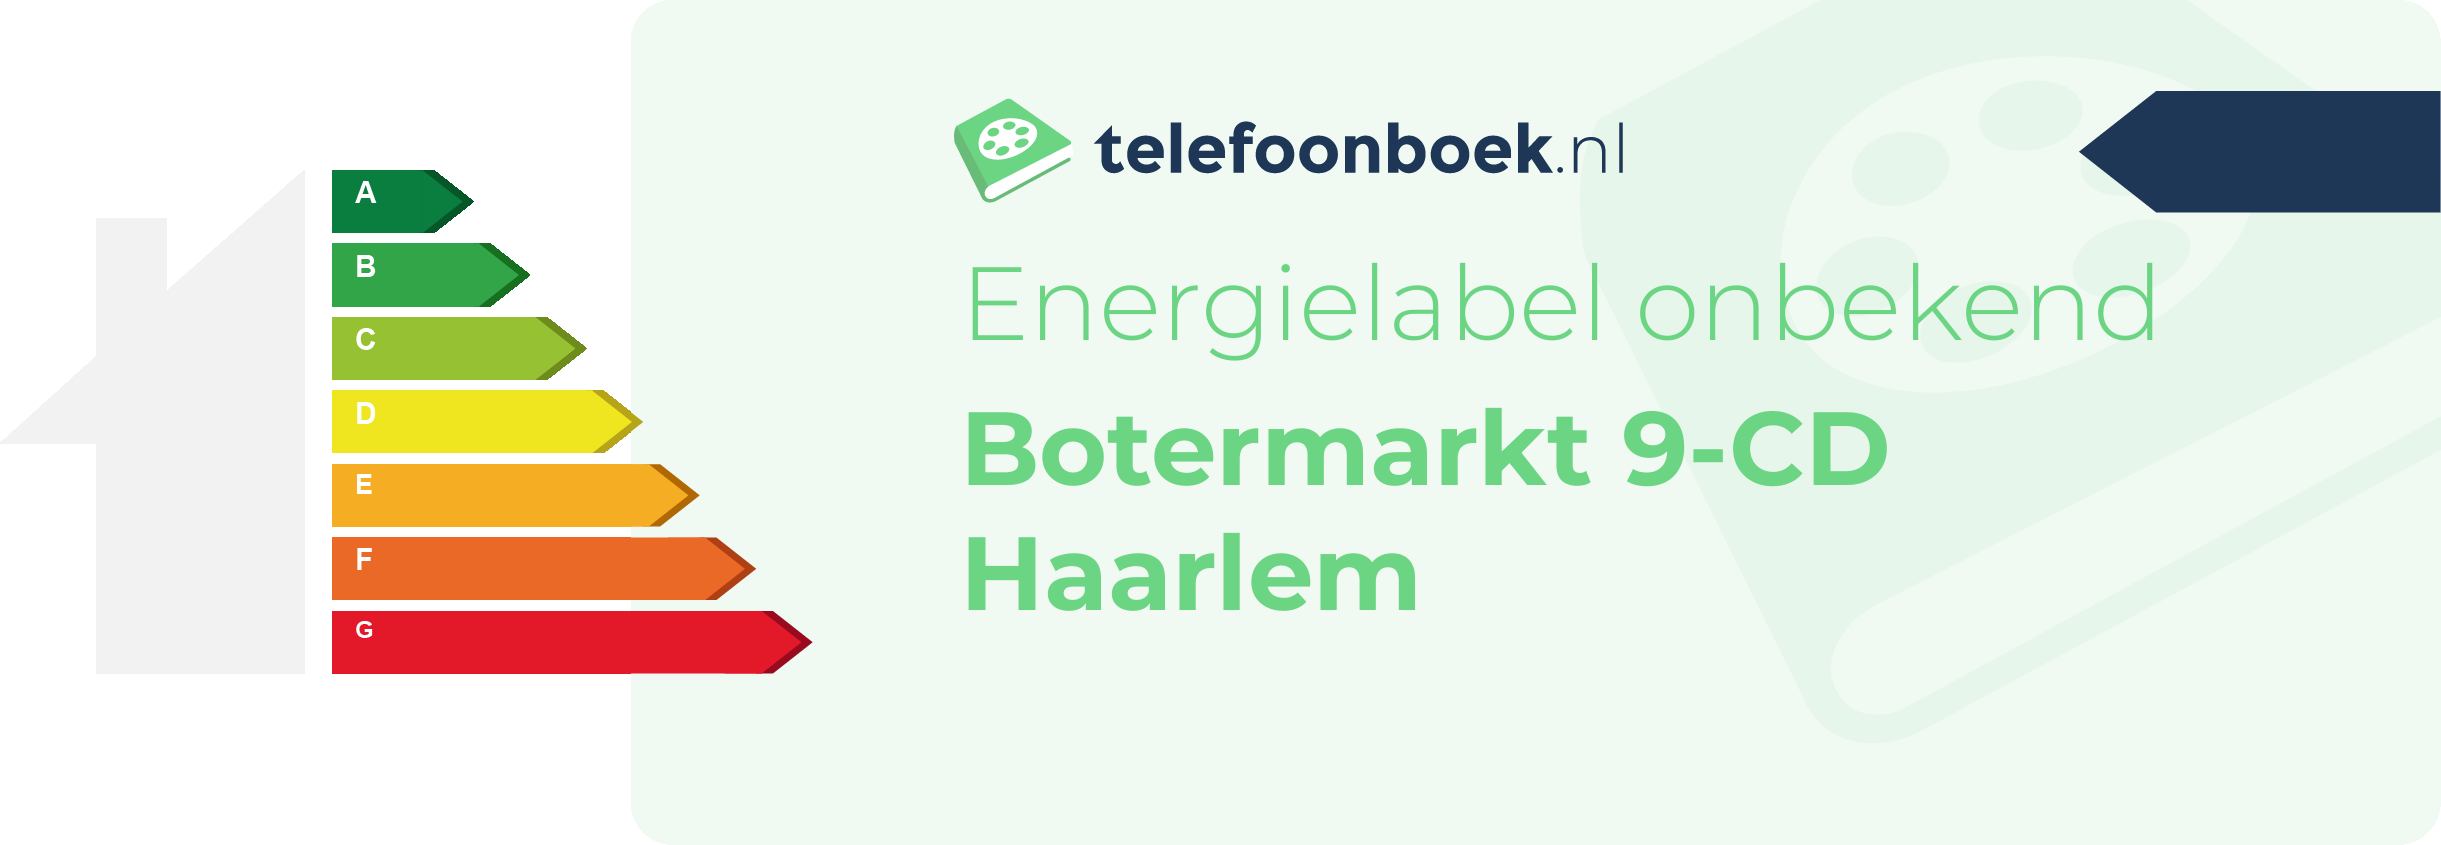 Energielabel Botermarkt 9-CD Haarlem